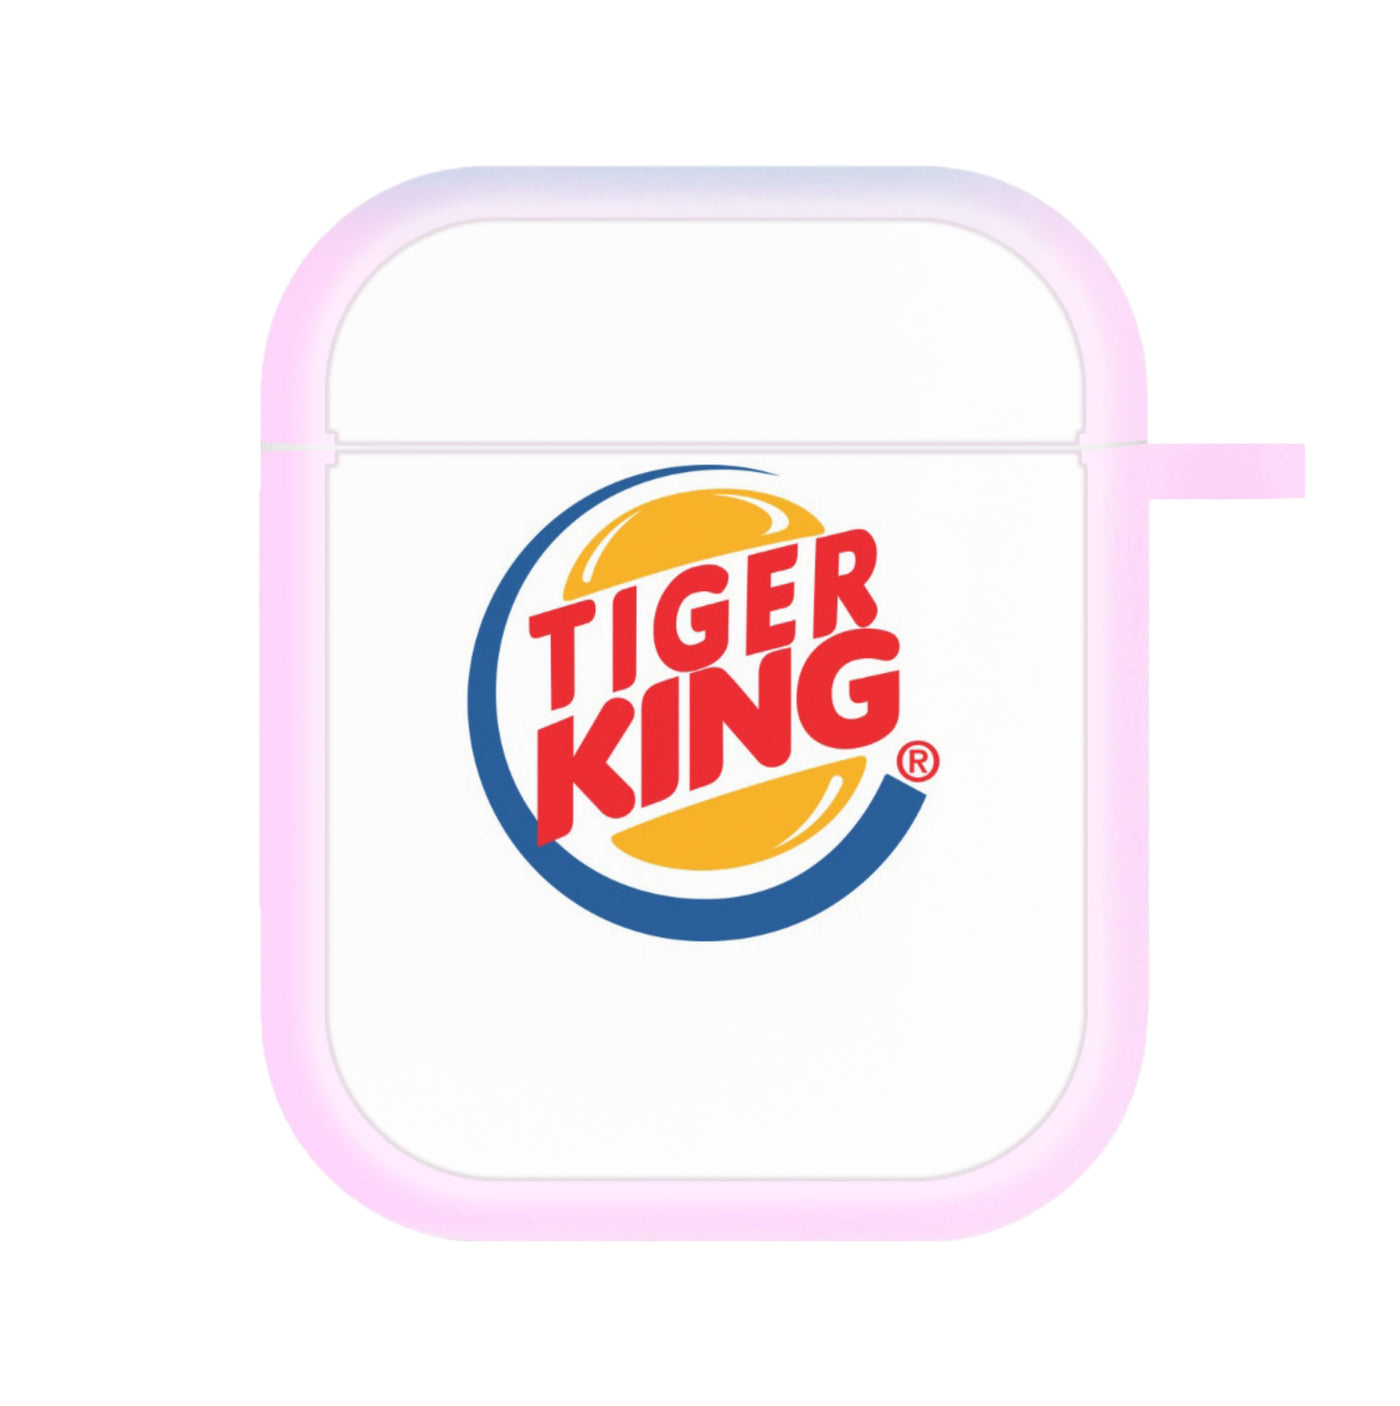 Tiger / Burger King Logo - Tiger King AirPods Case